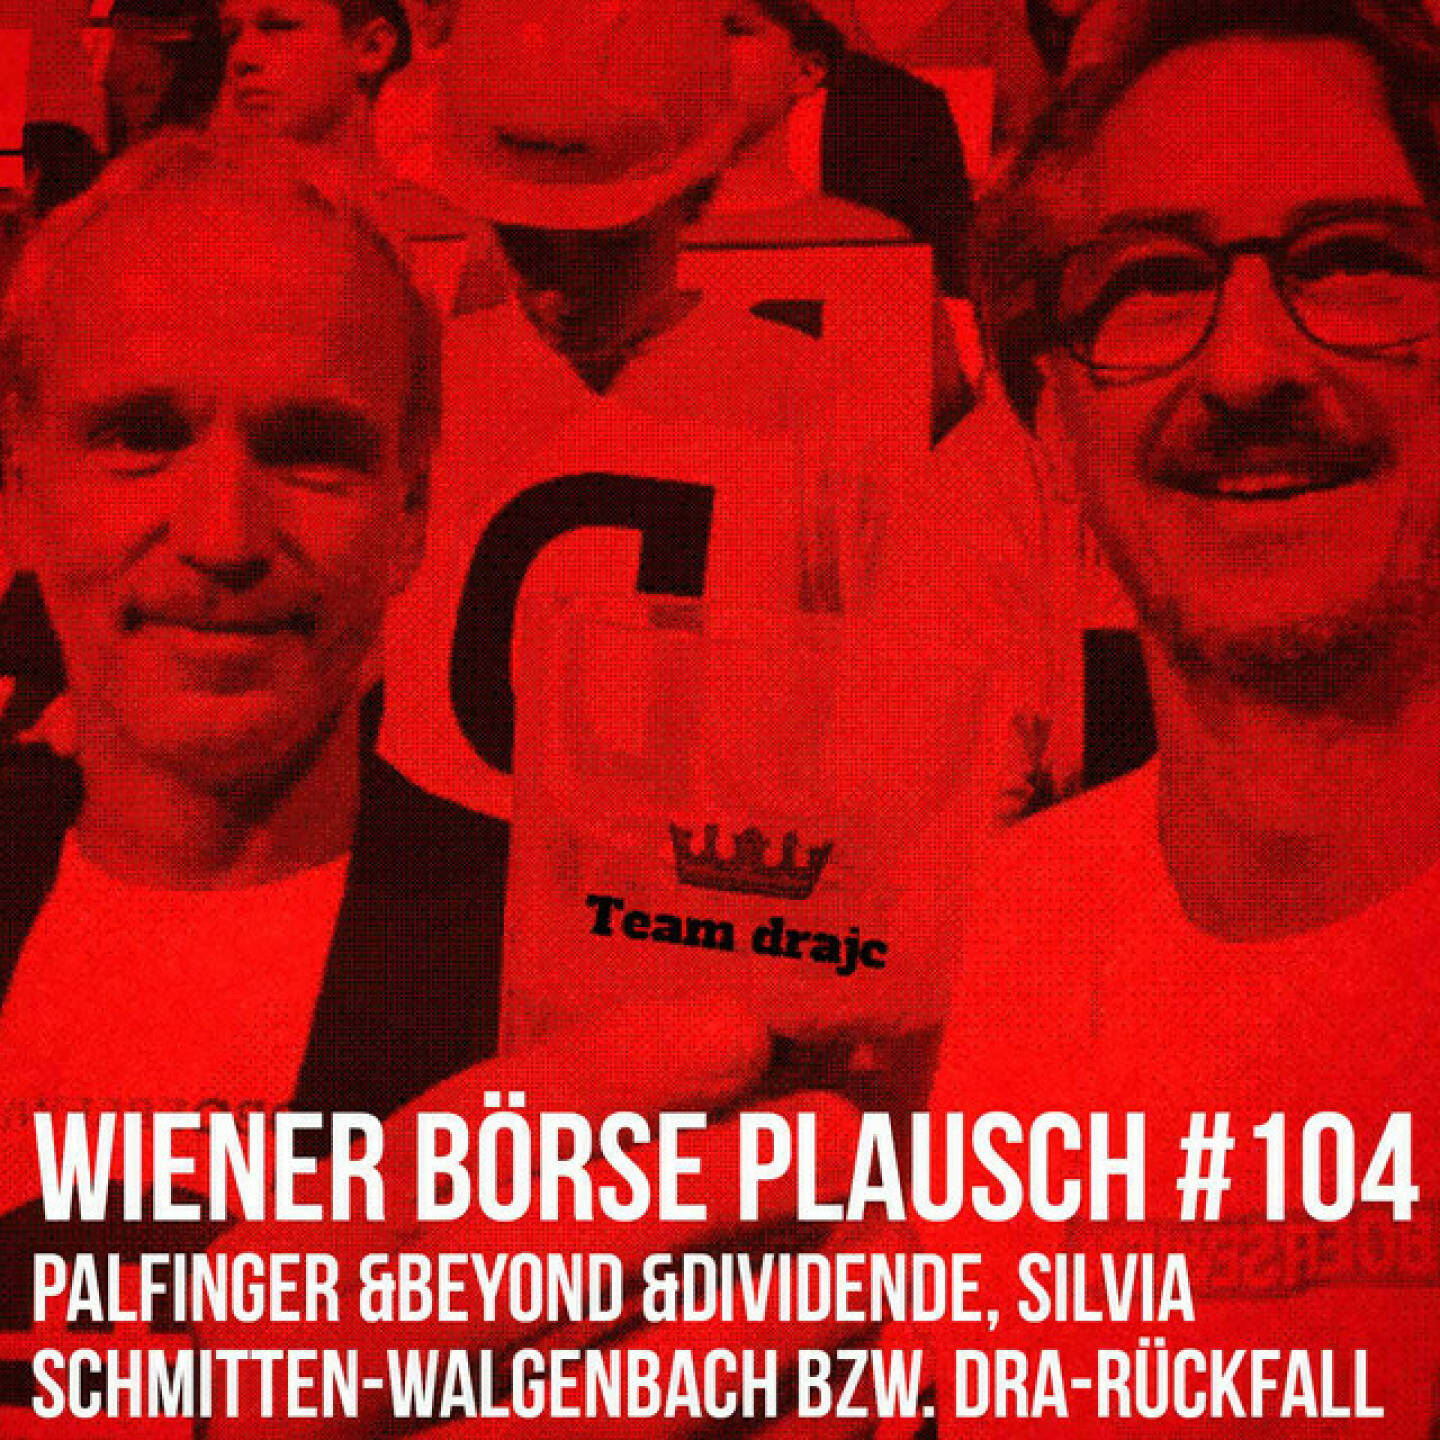 https://open.spotify.com/episode/04D9KUk79Z4dJk7d0YlrjI
Wiener Börse Plausch #104: Palfinger &beyond &Dividende, Silvia Schmitten-Walgenbach bzw. dra-Rückfall - <p>Team drajc, das sind die Börse Social Network Eigentümer Christian Drastil und Josef Chladek, hat im Wiener Börse Plausch #104 einen Palfinger-Schwerpunkt mit &amp;beyond und Dividende, weiters einen CA Immo-Tipp, Einschätzungen zu Erste und OMV bzw. letztendlich einen Absturz von Solokämpfer dra aus einer unsichtbaren Branche.</p><br/><p>Erwähnt werden: <br/>Silvia Schmitten-Walgenbach ist seit dem 1. Januar 2022 CEO der CA Immobilien Anlagen AG. Hier im Interview <a href=https://boersenradio.at/page/brn/40250 rel=nofollow>https://boersenradio.at/page/brn/40250</a></p><br/><p>Die 2022er-Folgen vom Wiener Börse Plausch sind präsentiert von Wienerberger, CEO Heimo Scheuch hat sich im Q4 ebenfalls unter die Podcaster gemischt: <a href=https://open.spotify.com/show/5D4Gz8bpAYNAI6tg7H695E rel=nofollow>https://open.spotify.com/show/5D4Gz8bpAYNAI6tg7H695E</a> . Co-Presenter im März ist Trockeneis-online.com, siehe auch die überarbeitete <a href=https://boersenradio.at rel=nofollow>https://boersenradio.at</a><br/>Der Theme-Song, der eigentlich schon aus dem Jänner stammt und spontan von der Rosinger Group supportet wurde: Sound &amp; Lyrics unter <a href=https://boersenradio.at/page/podcast/2734/ rel=nofollow>https://boersenradio.at/page/podcast/2734/</a> .</p><br/><p>Risikohinweis: Die hier veröffentlichten Gedanken sind weder als Empfehlung noch als ein Angebot oder eine Aufforderung zum An- oder Verkauf von Finanzinstrumenten zu verstehen und sollen auch nicht so verstanden werden. Sie stellen lediglich die persönliche Meinung der Podcastmacher dar. Der Handel mit Finanzprodukten unterliegt einem Risiko. Sie können Ihr eingesetztes Kapital verlieren.</p>